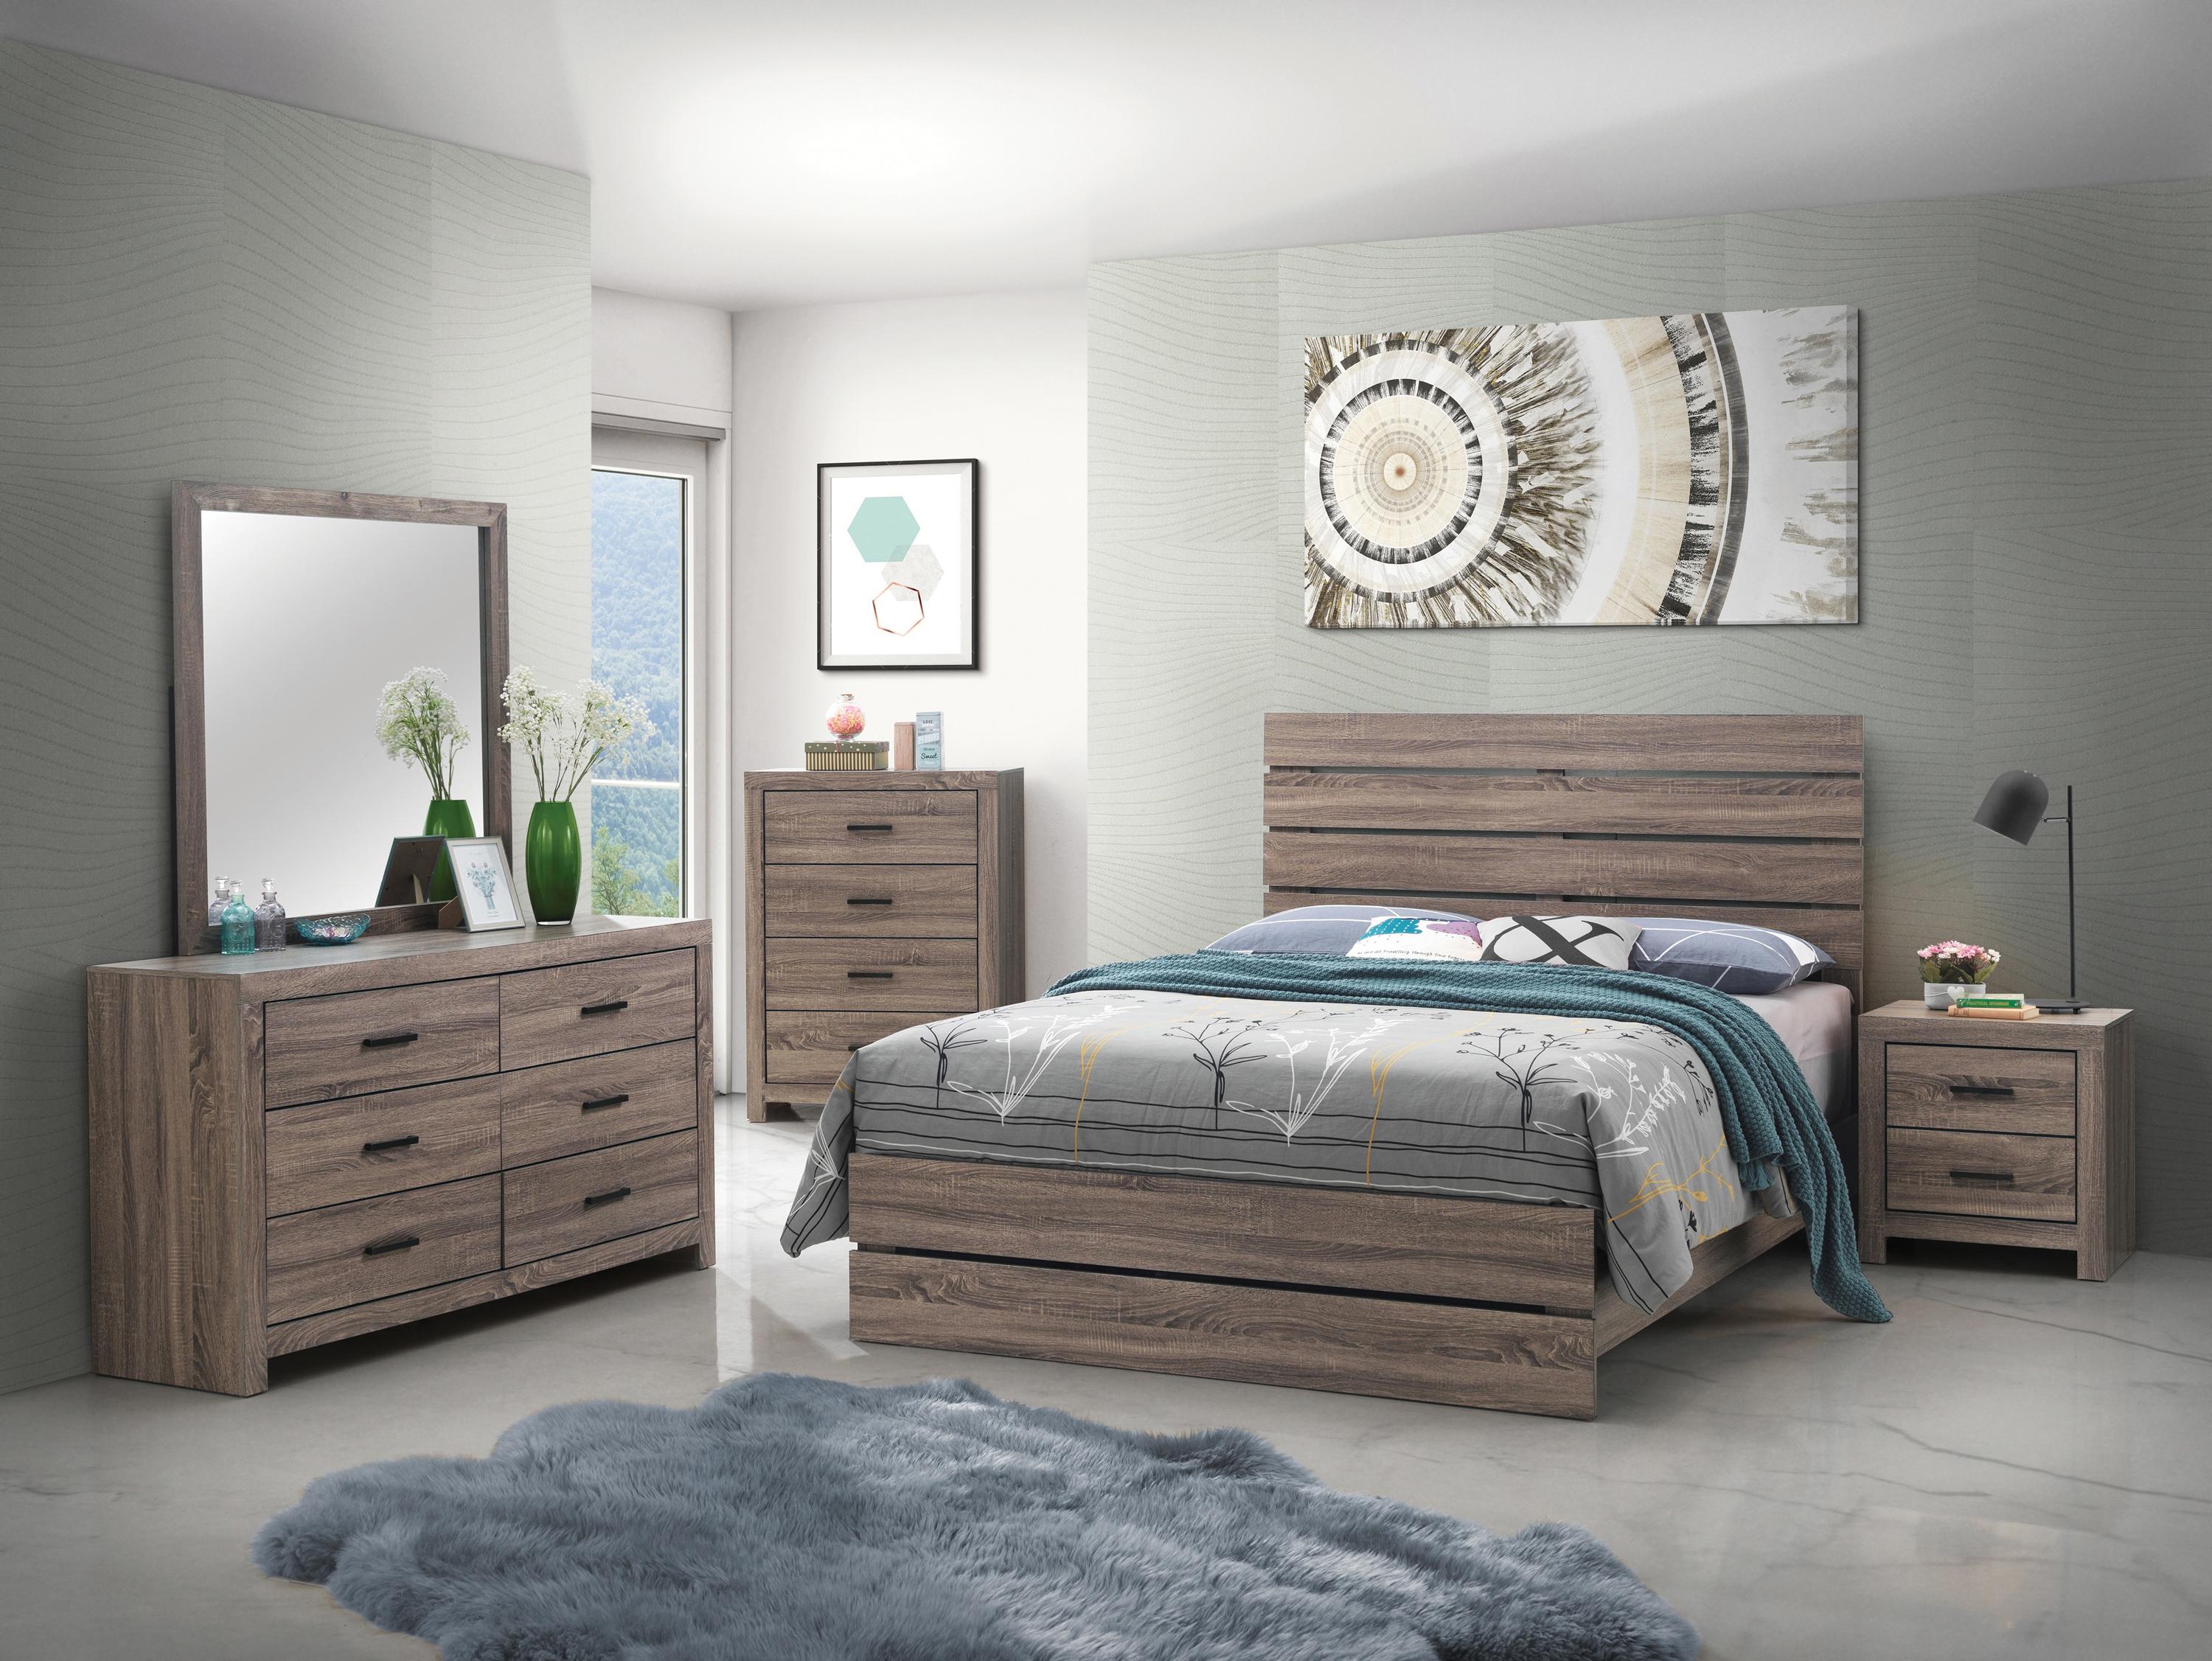 

    
Rustic Barrel Oak Wood Queen Panel Bedroom Set 5pcs Coaster 207041Q Brantford
